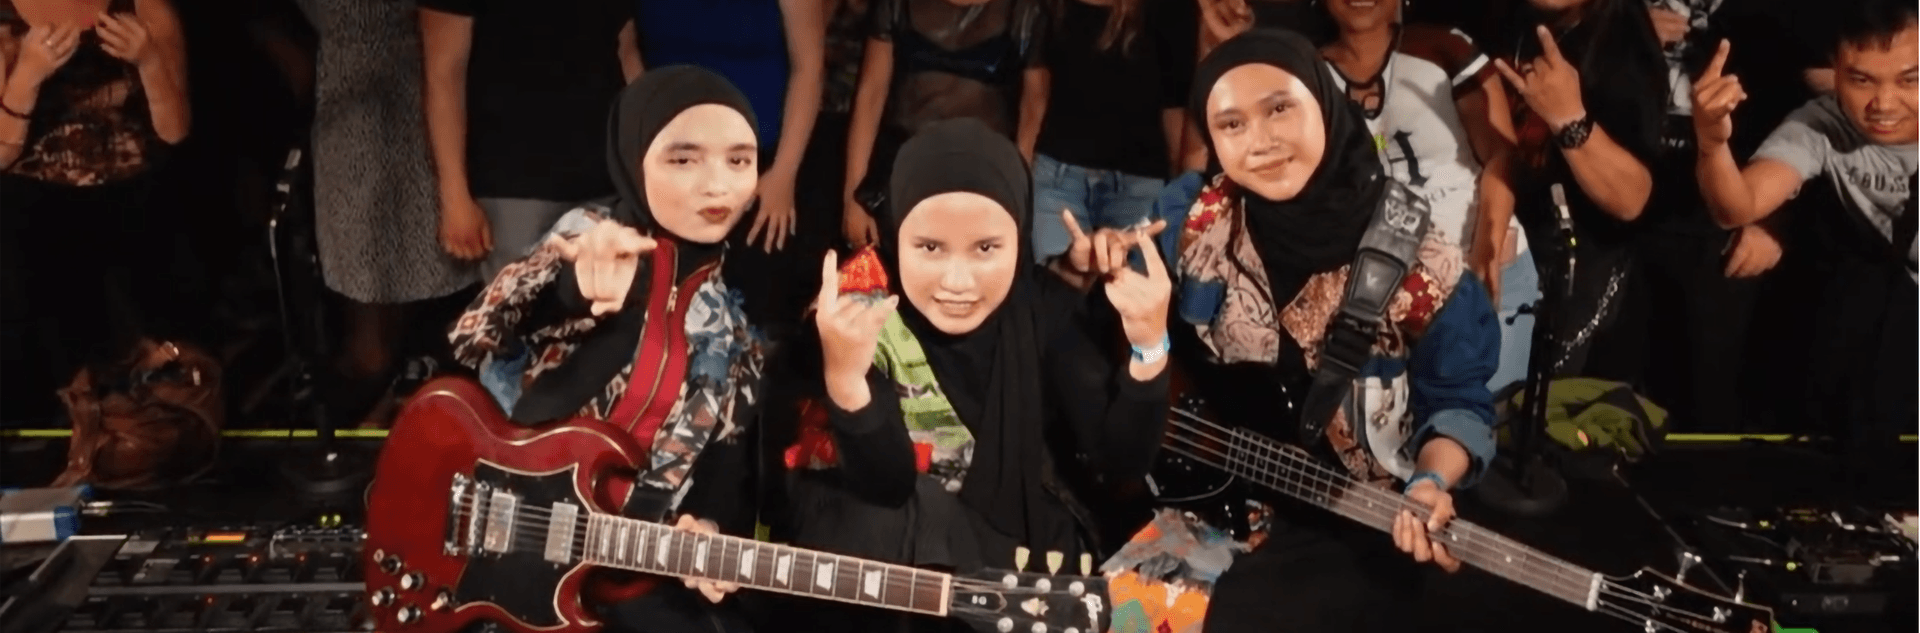 Jung, laut, Frau – Mit Metal und Hijab nach Wacken